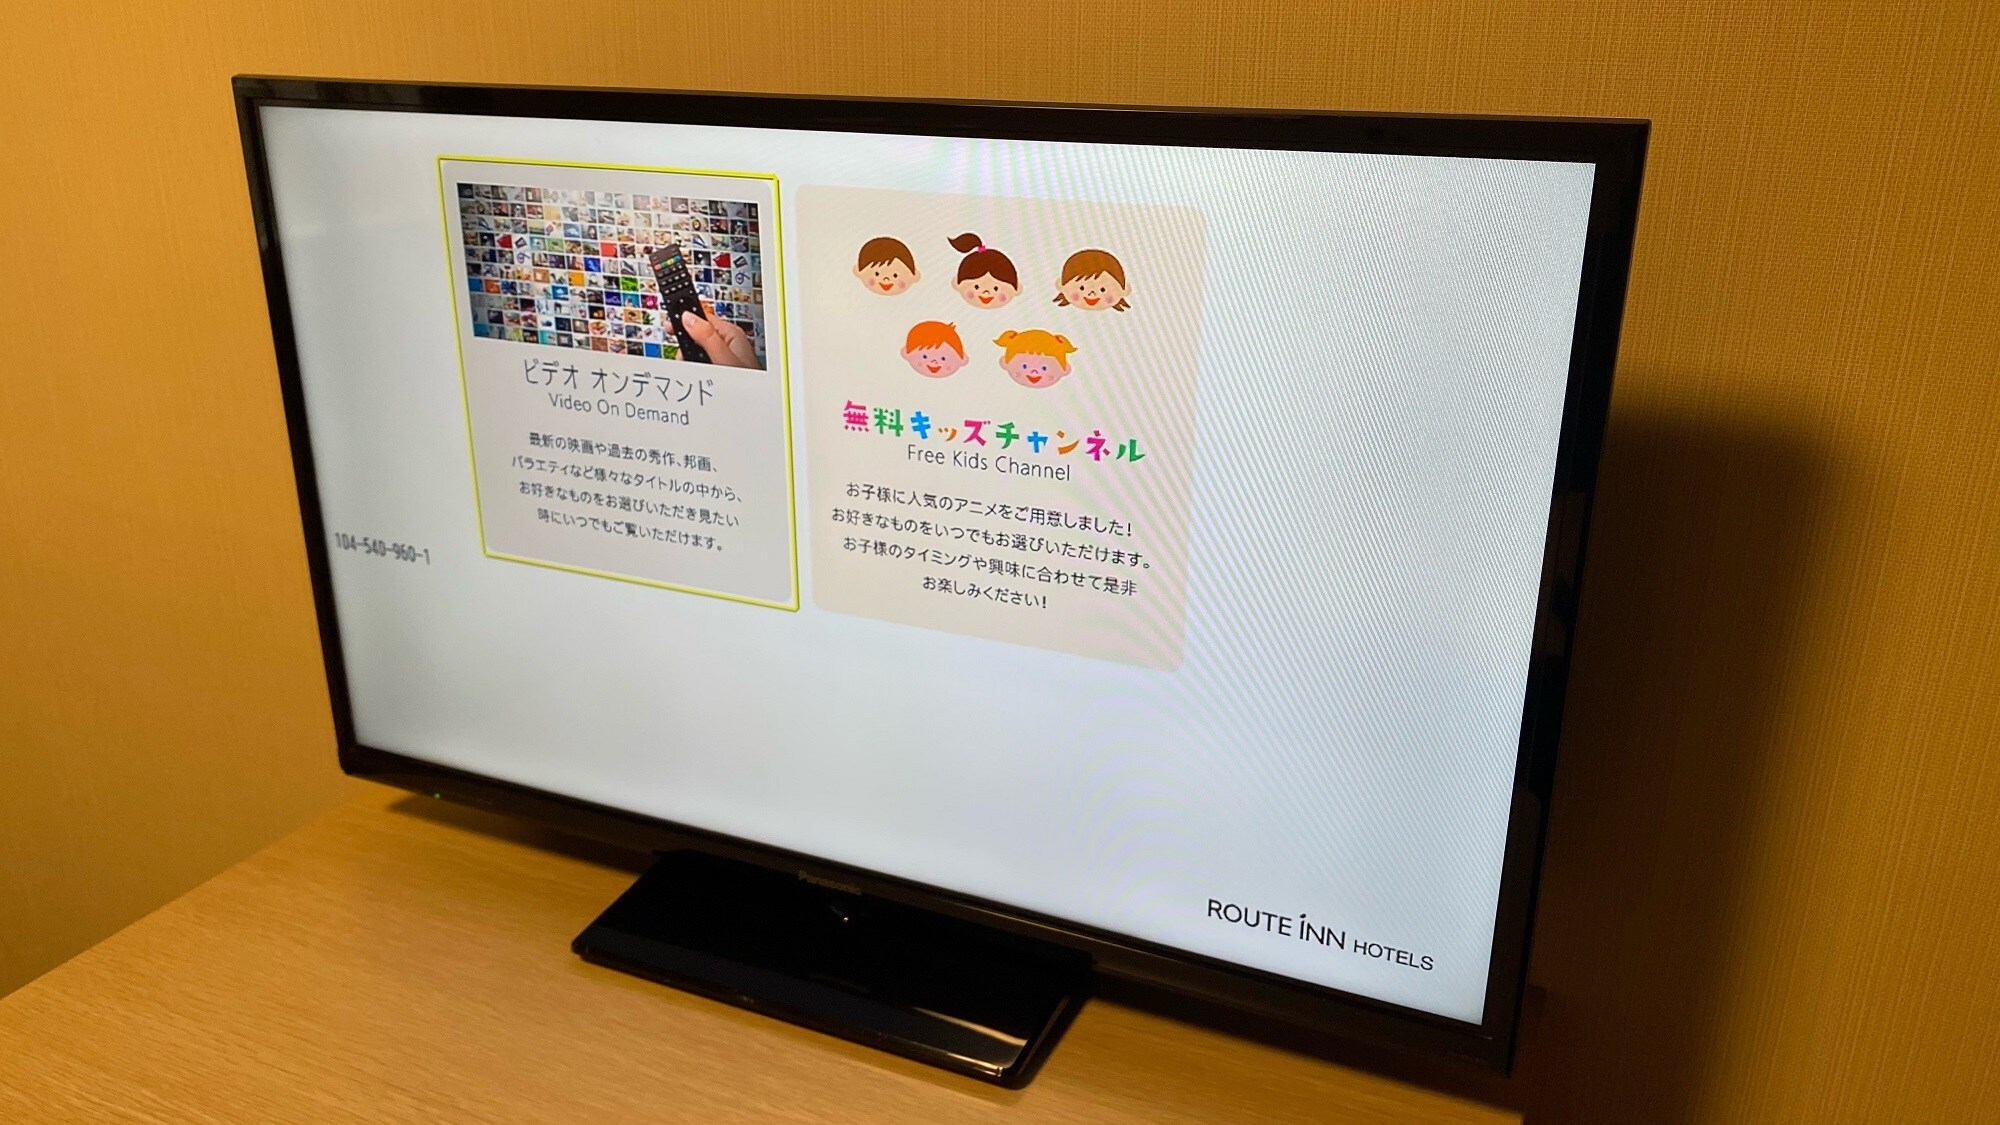 32형 LCD TV